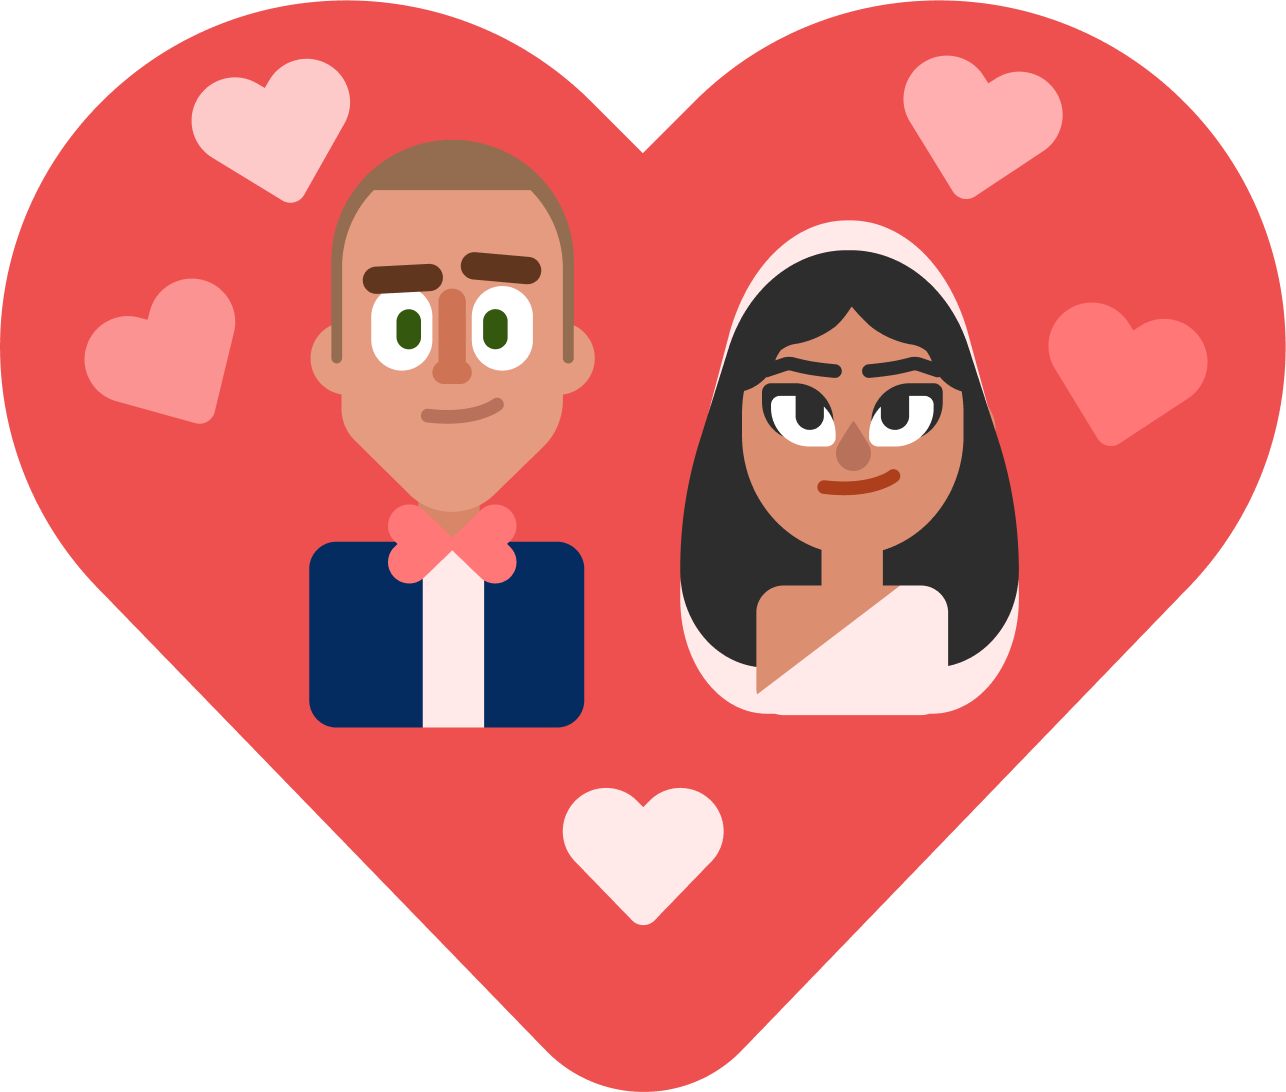 Ein Herz mit einer Abbildung von zwei Personen darin – der Bräutigam links und die Braut rechts.